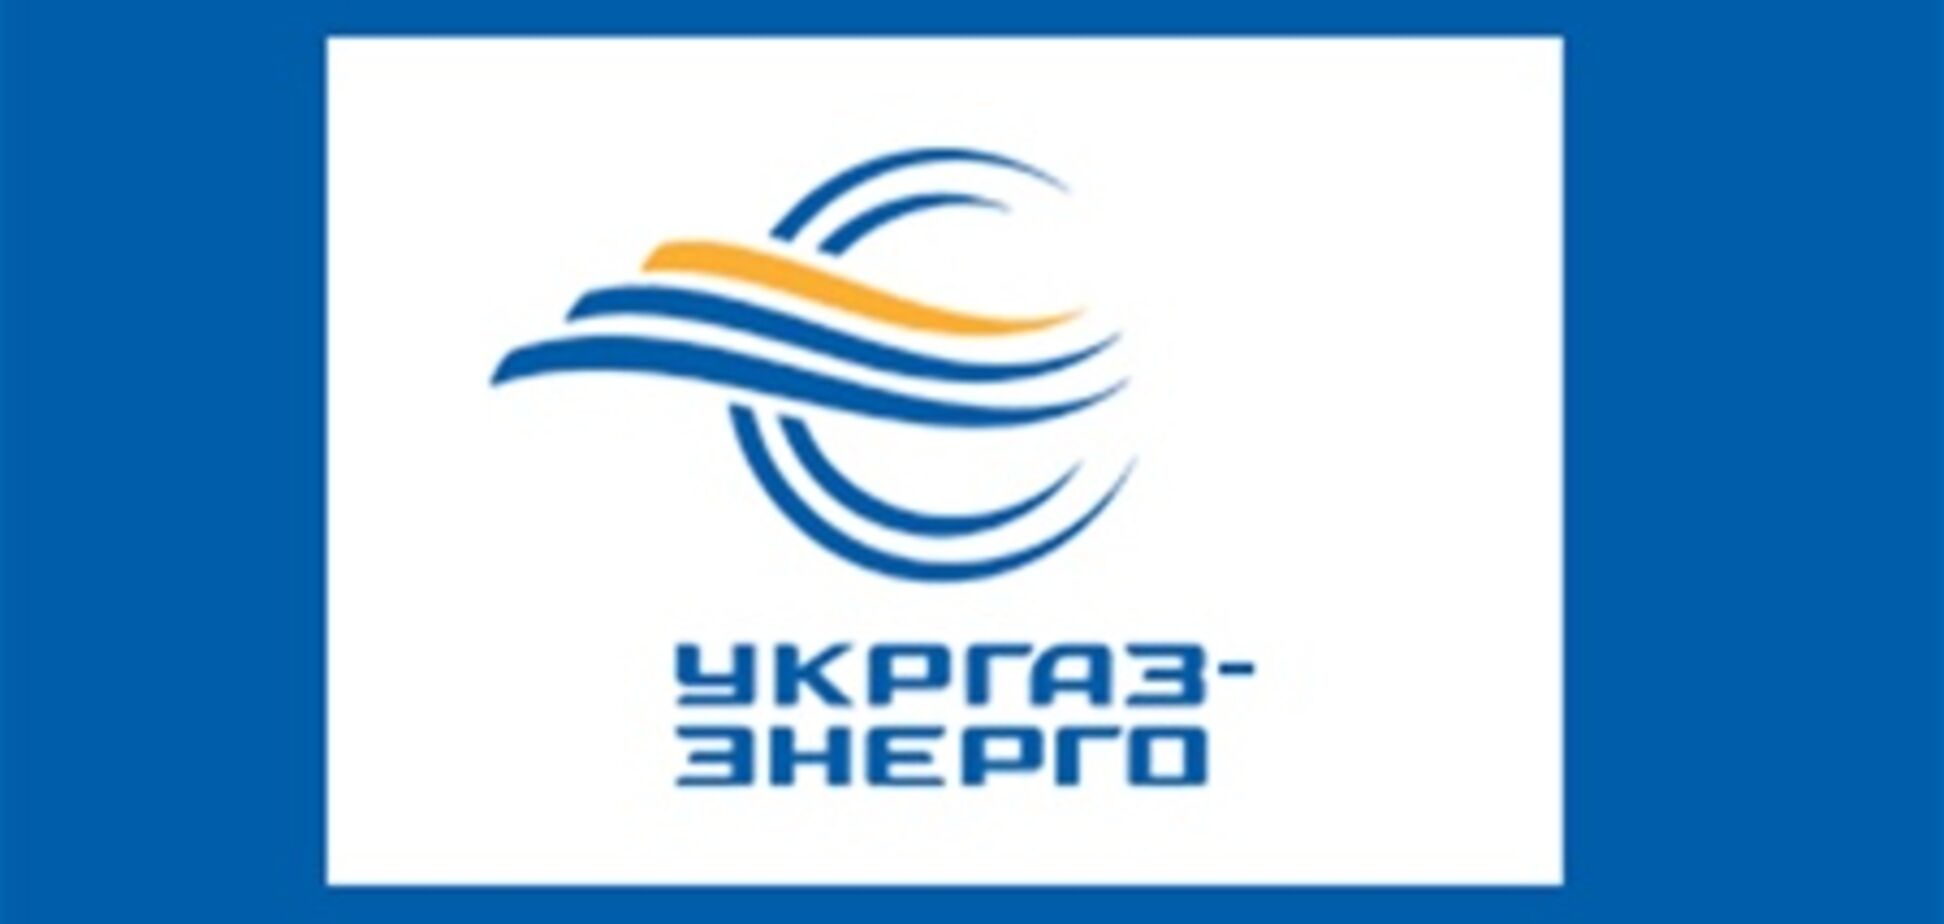 На газовый рынок возвращается посредник УкрГаз-Энерго 